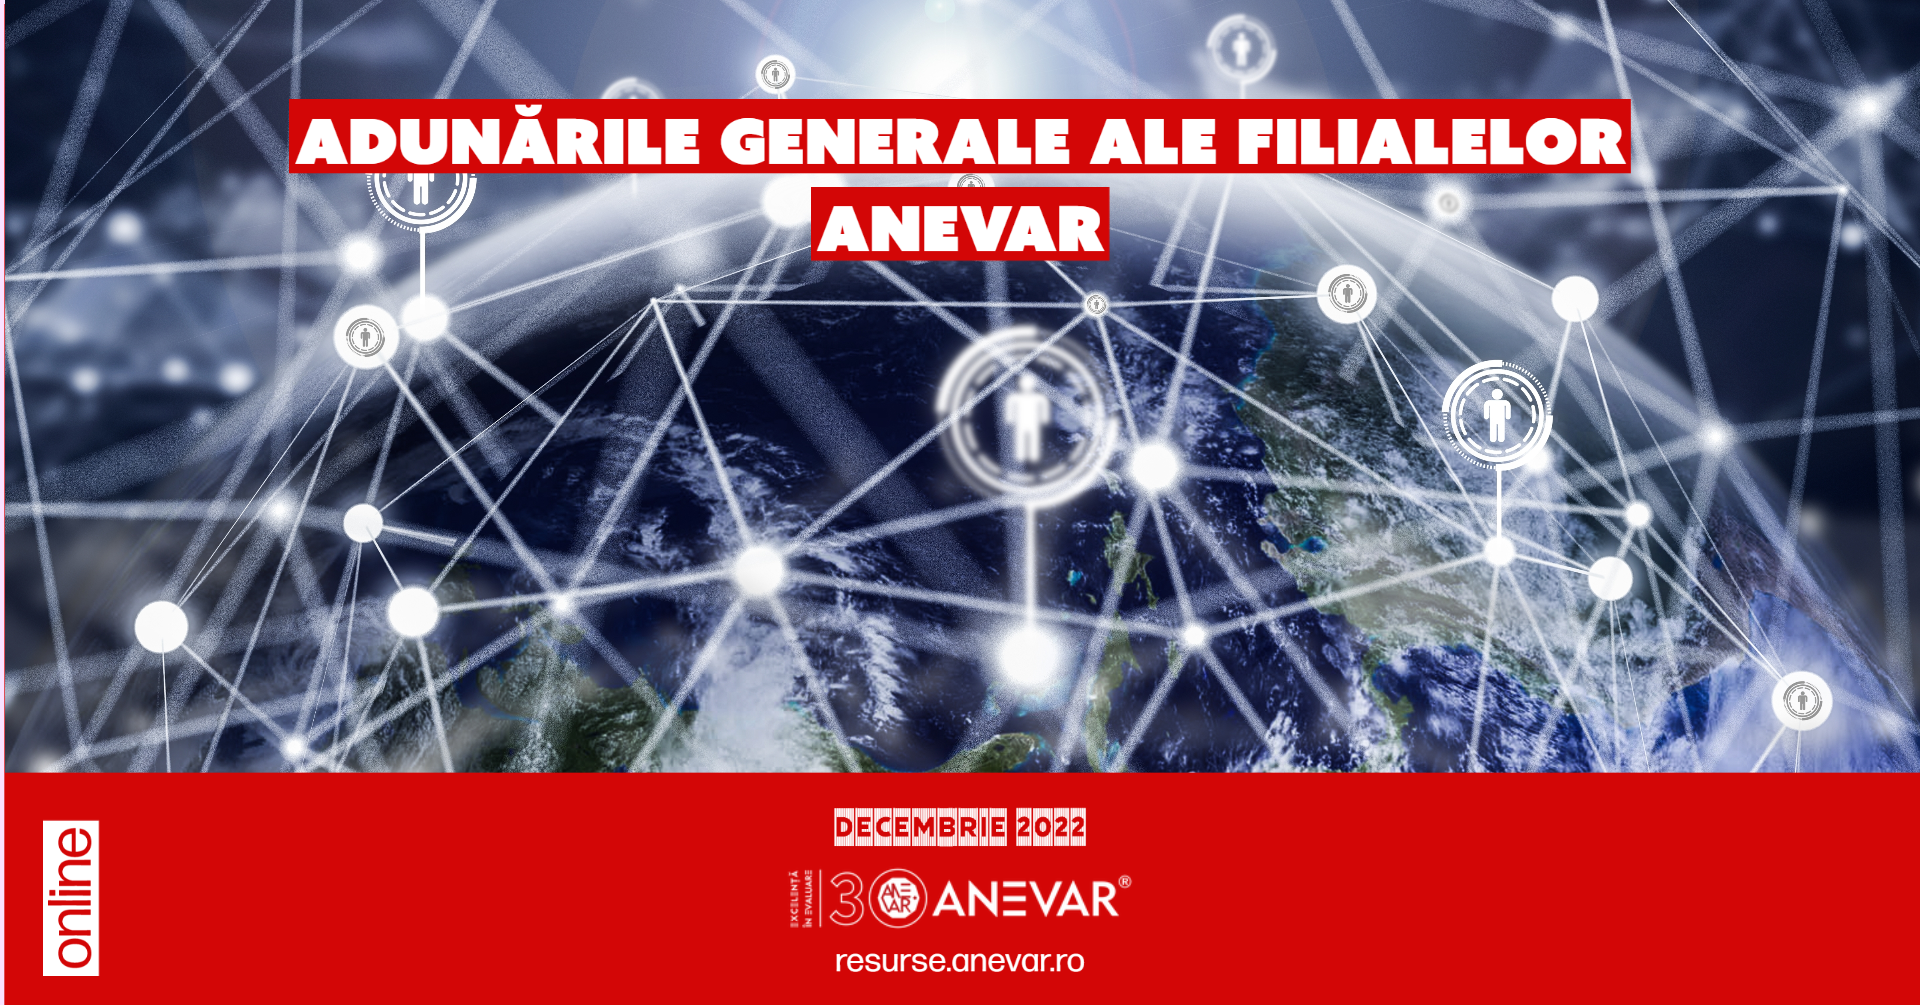 Programul Adunărilor generale ale filialelor ANEVAR - Decembrie 2022